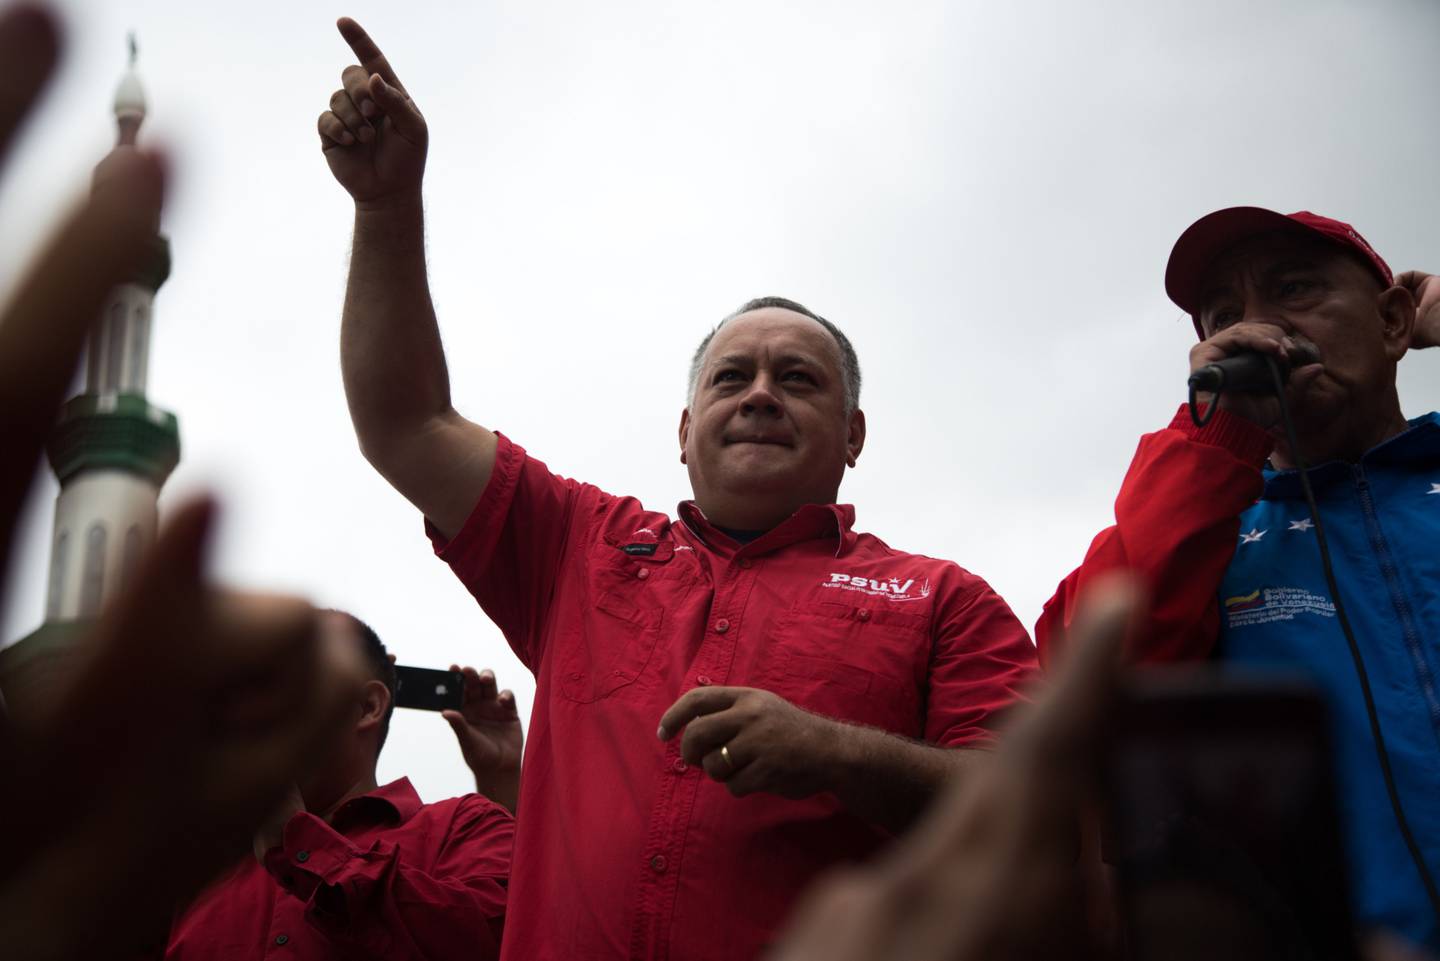 Diosdado Cabello, en el centro, hace un gesto durante un mitin progubernamental contra el entonces presidente de Estados Unidos, Donald Trump, en Caracas, Venezuela, el lunes 14 de agosto de 2017. dfd